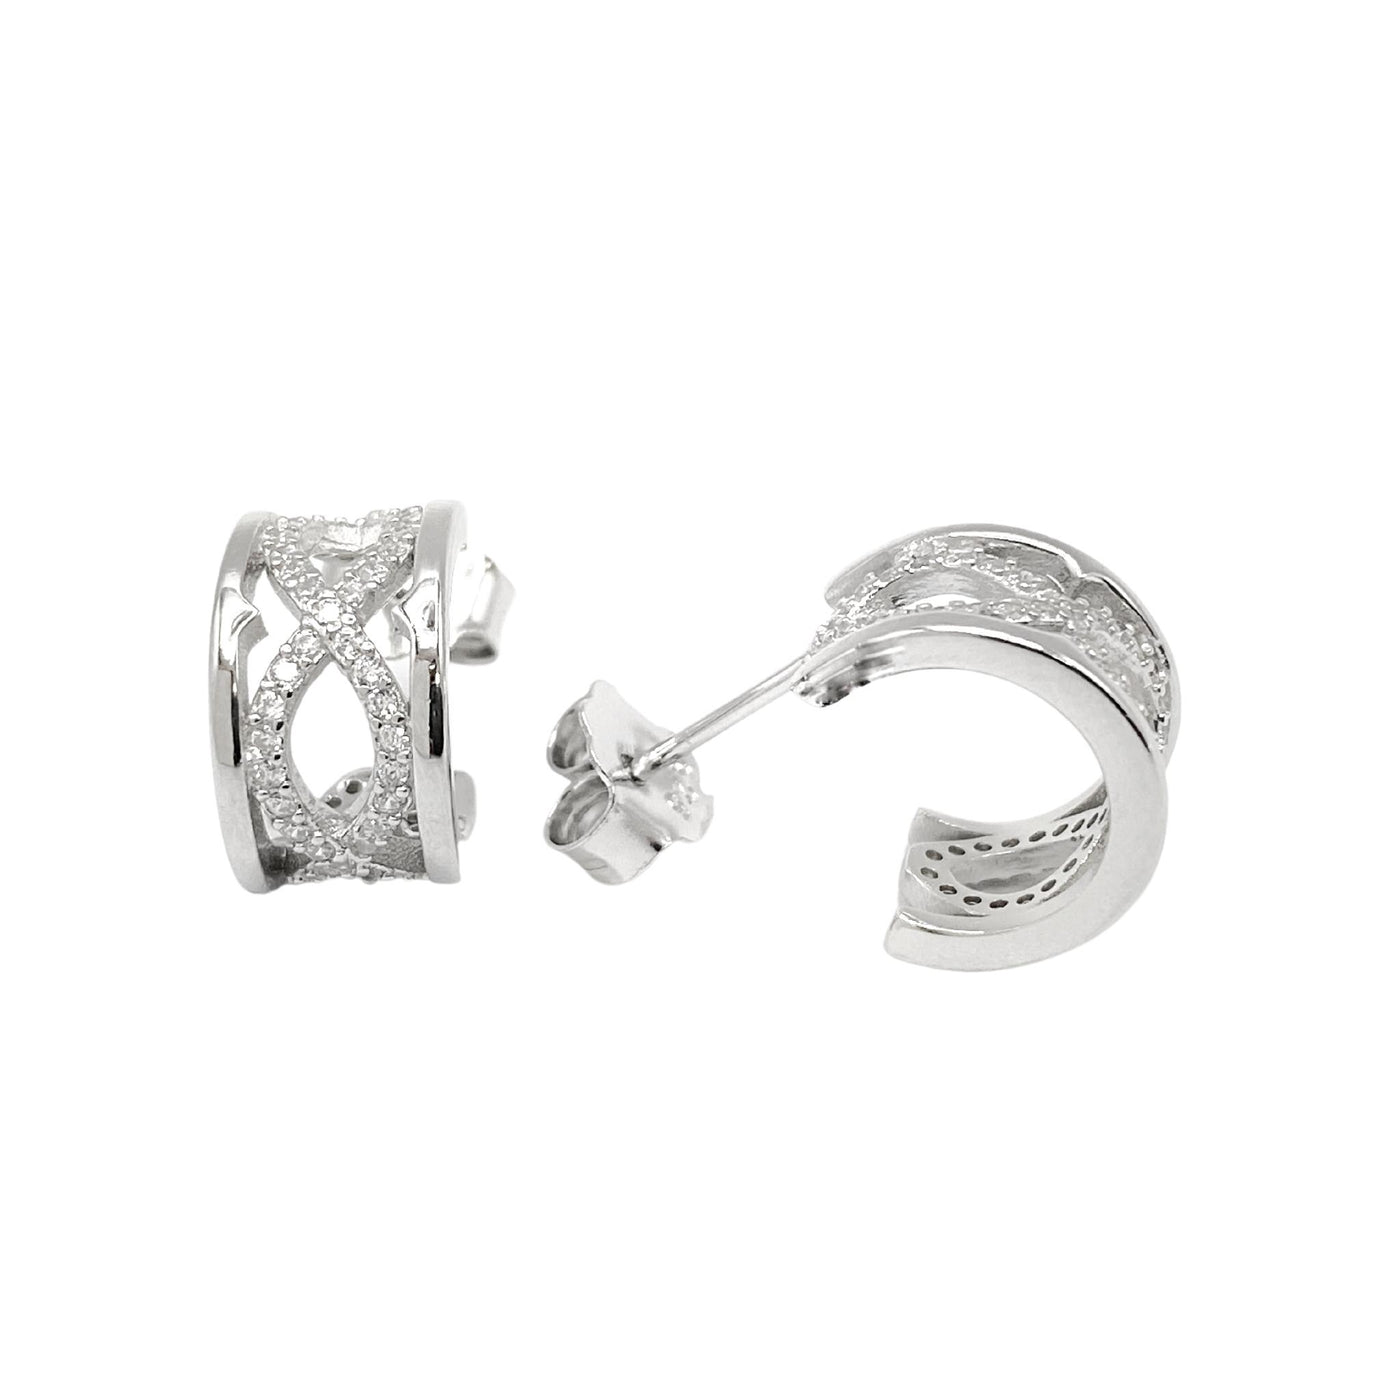 Silver huggie hoop earring with infinite - 11.30 mm